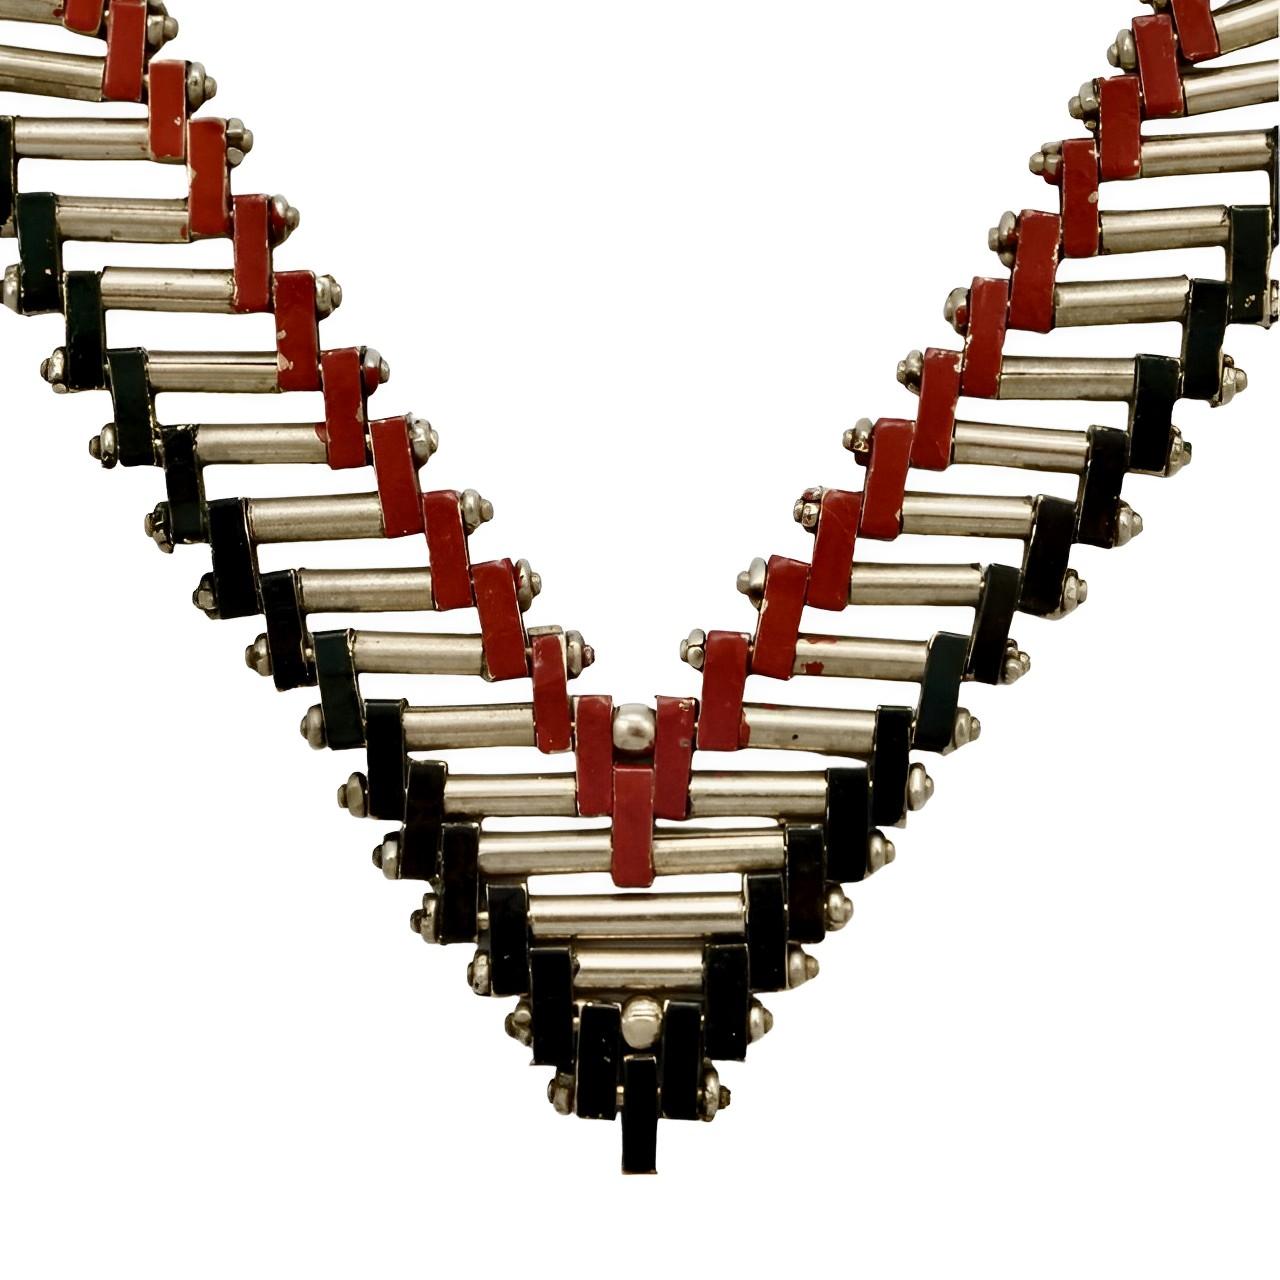 Fabelhafte Jakob Bengel Art Deco Kette aus verchromten Ziegeln und Stäben, mit roter und schwarzer Emaille. Messende Länge ungefähr 45 cm / 17,7 Zoll durch Breite 1,6 cm / .6 Zoll. Die Halskette ist in sehr gutem Zustand, mit kleinen Absplitterungen